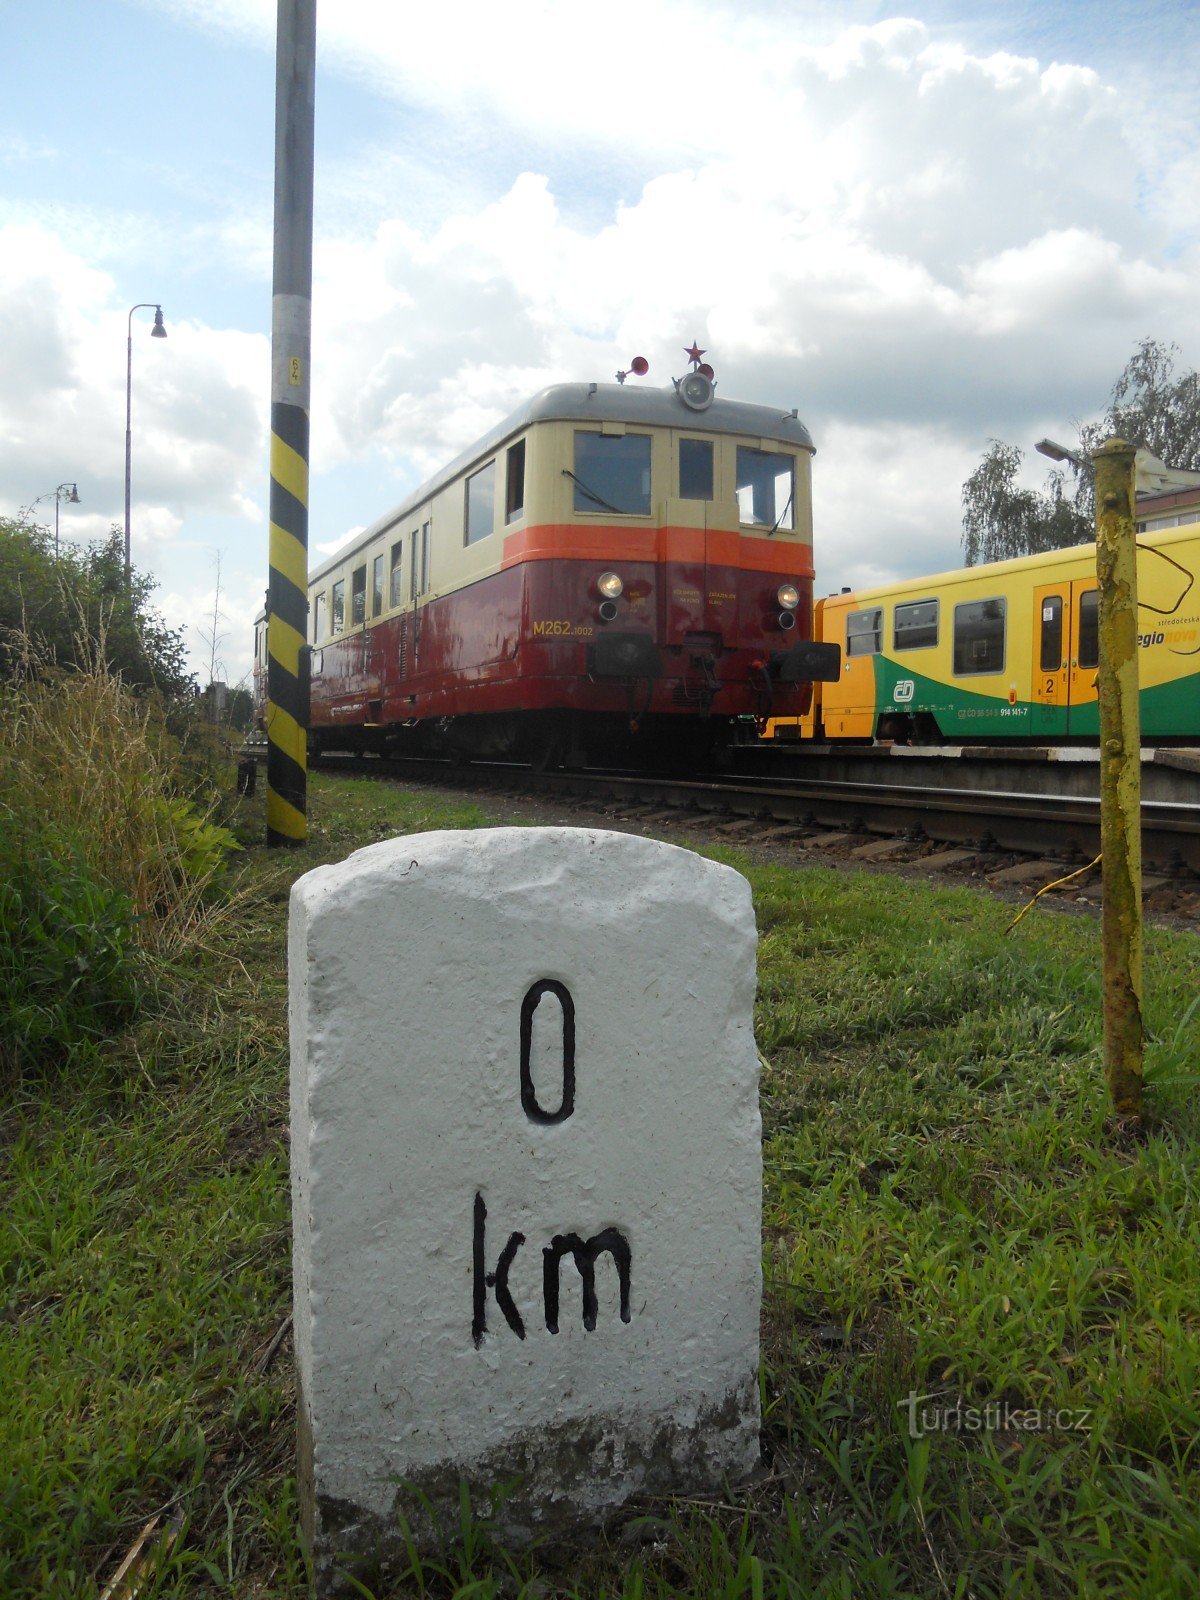 M262.1002 saapuu Jičínin asemalle.